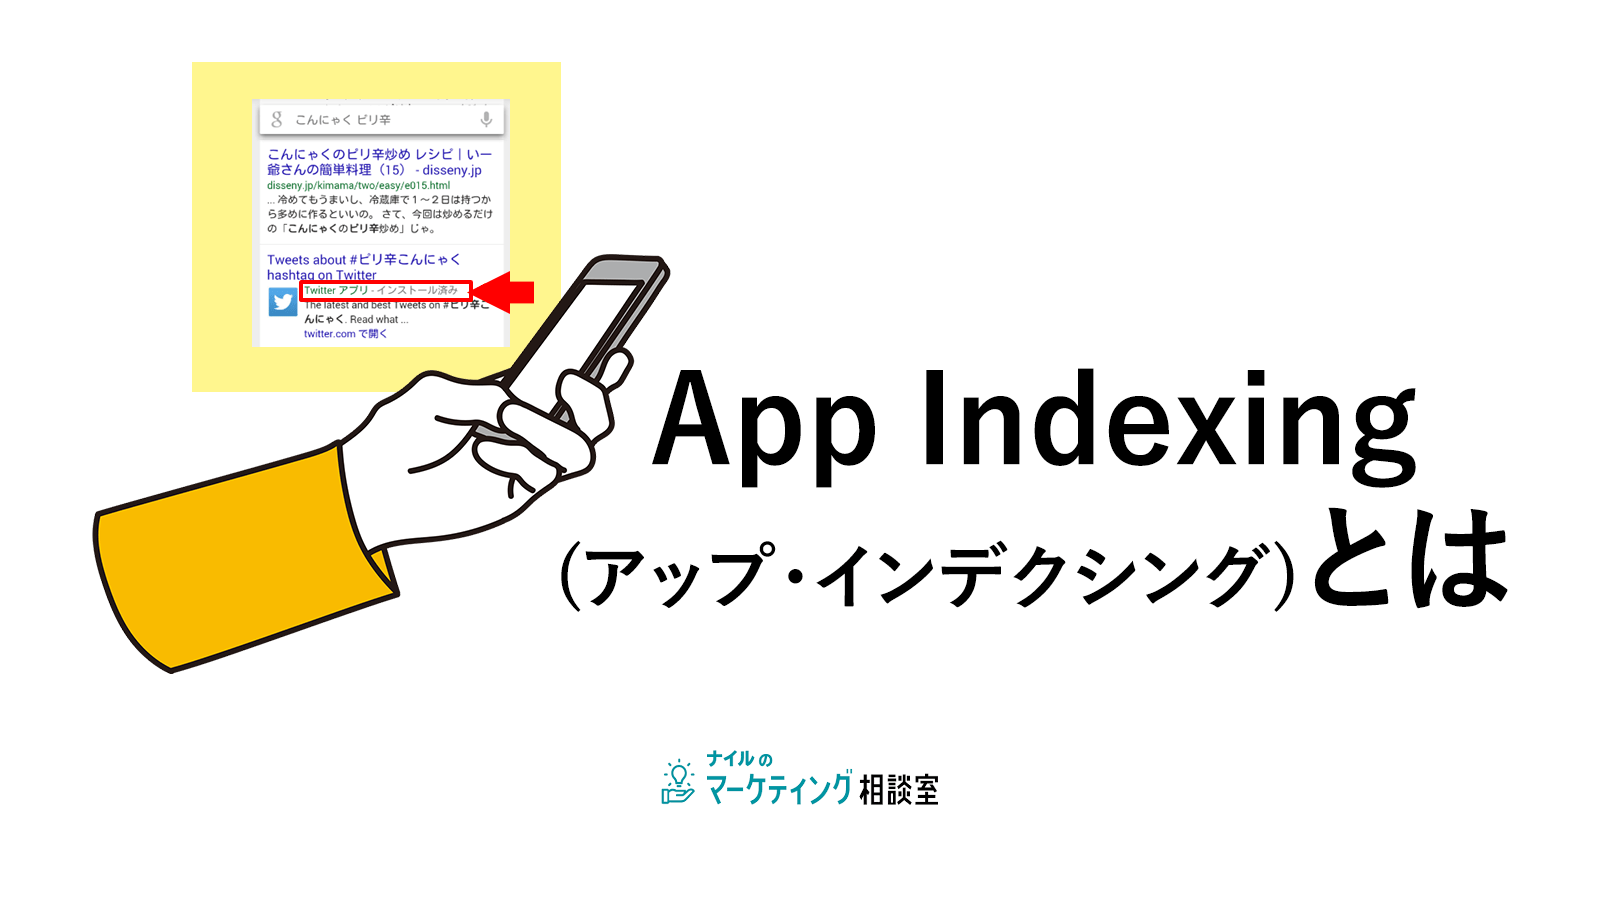 App Indexing(アップ・インデクシング) とは